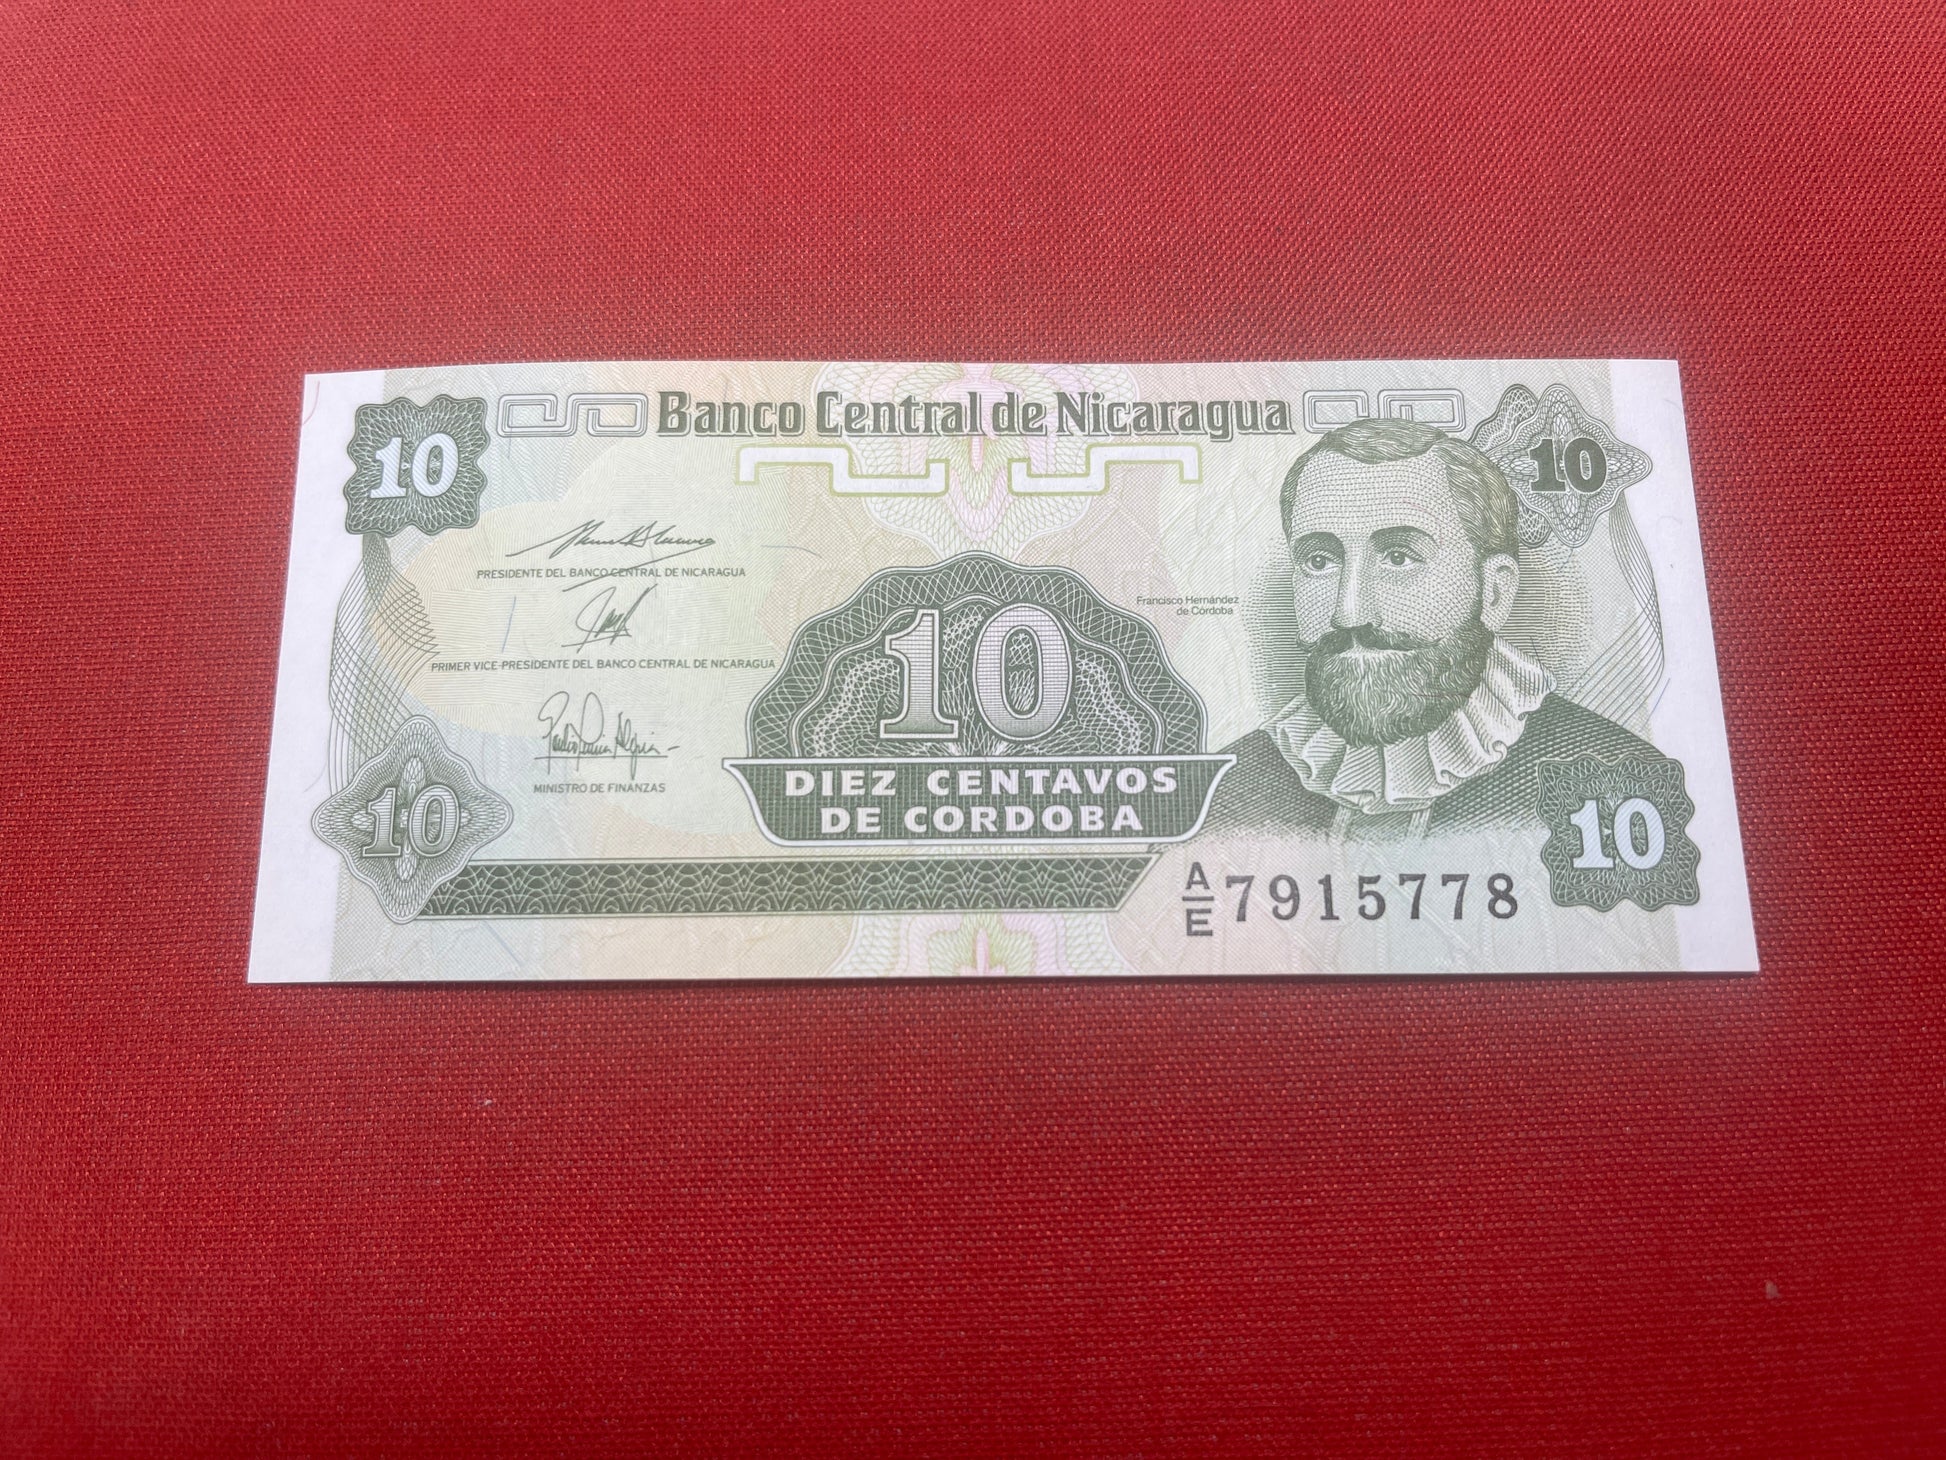 Banco Central Nicaragua 10 Diez Centavos De Cordoba Serial AE 7915778